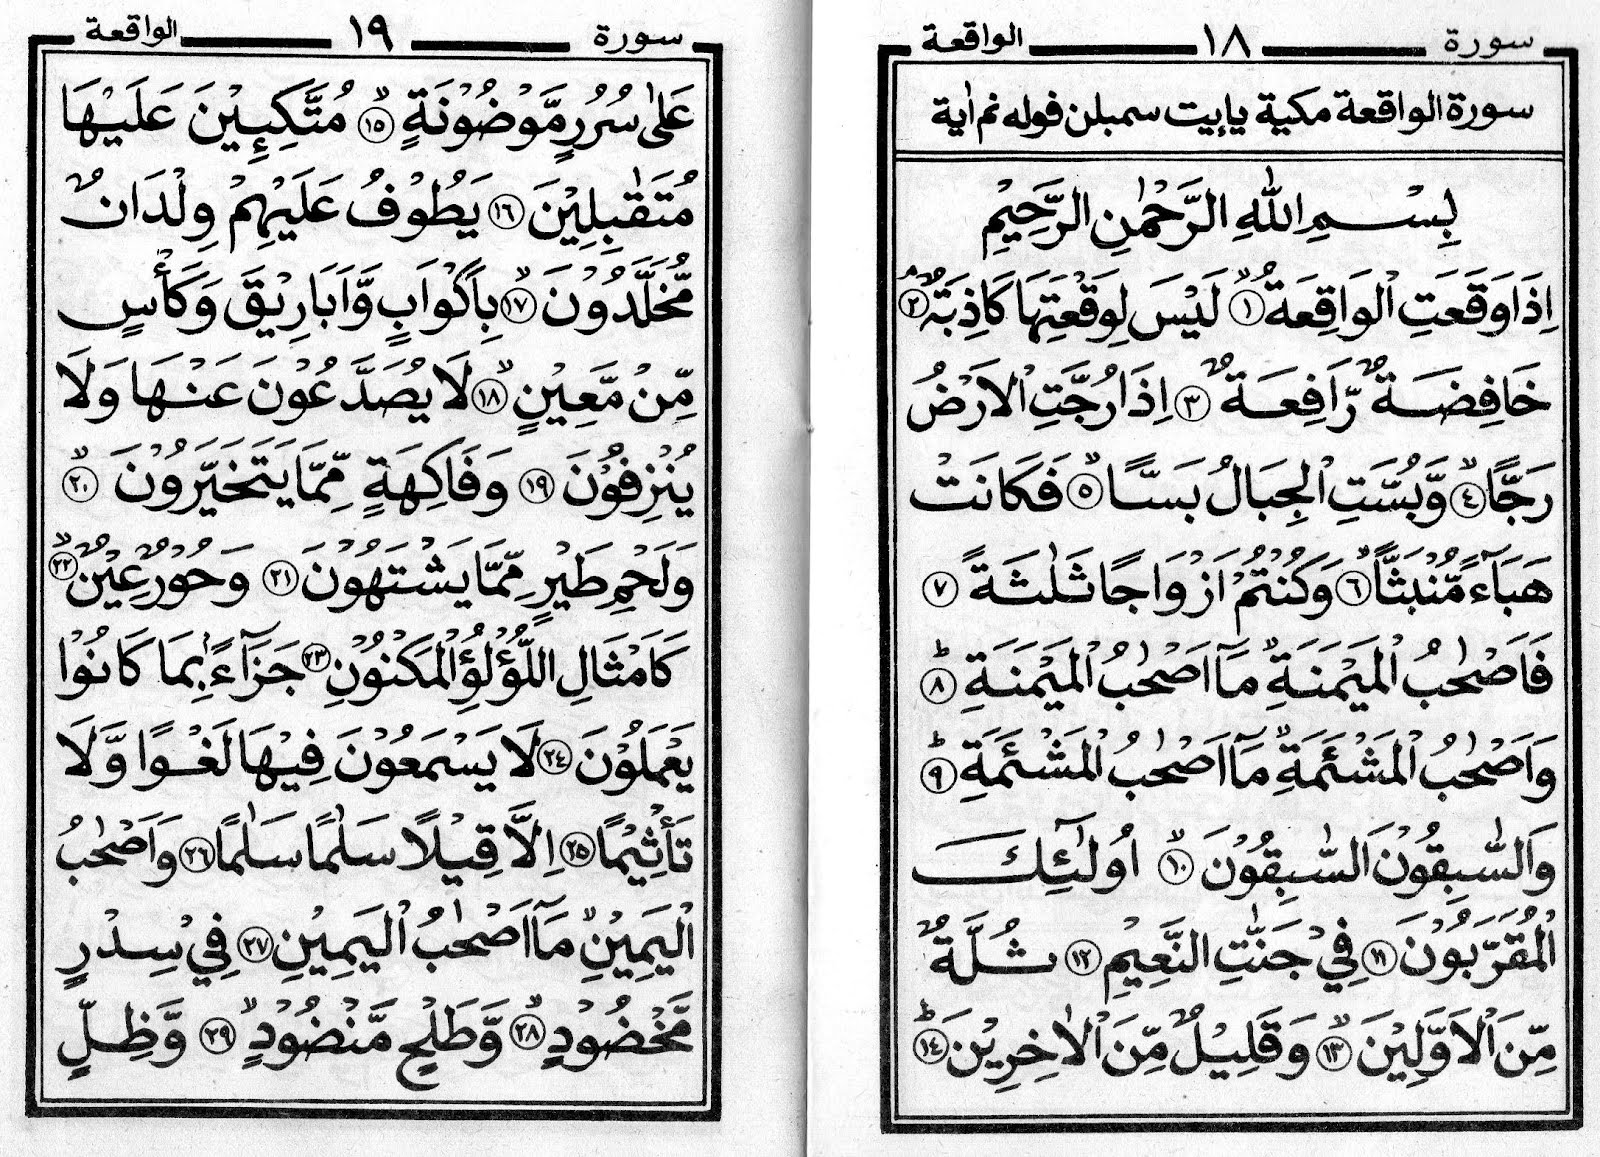 Surah Waqiah Full Text : SURAH AL WAQIAH || JUZ 27 || ABYAN MUWAFFAQ